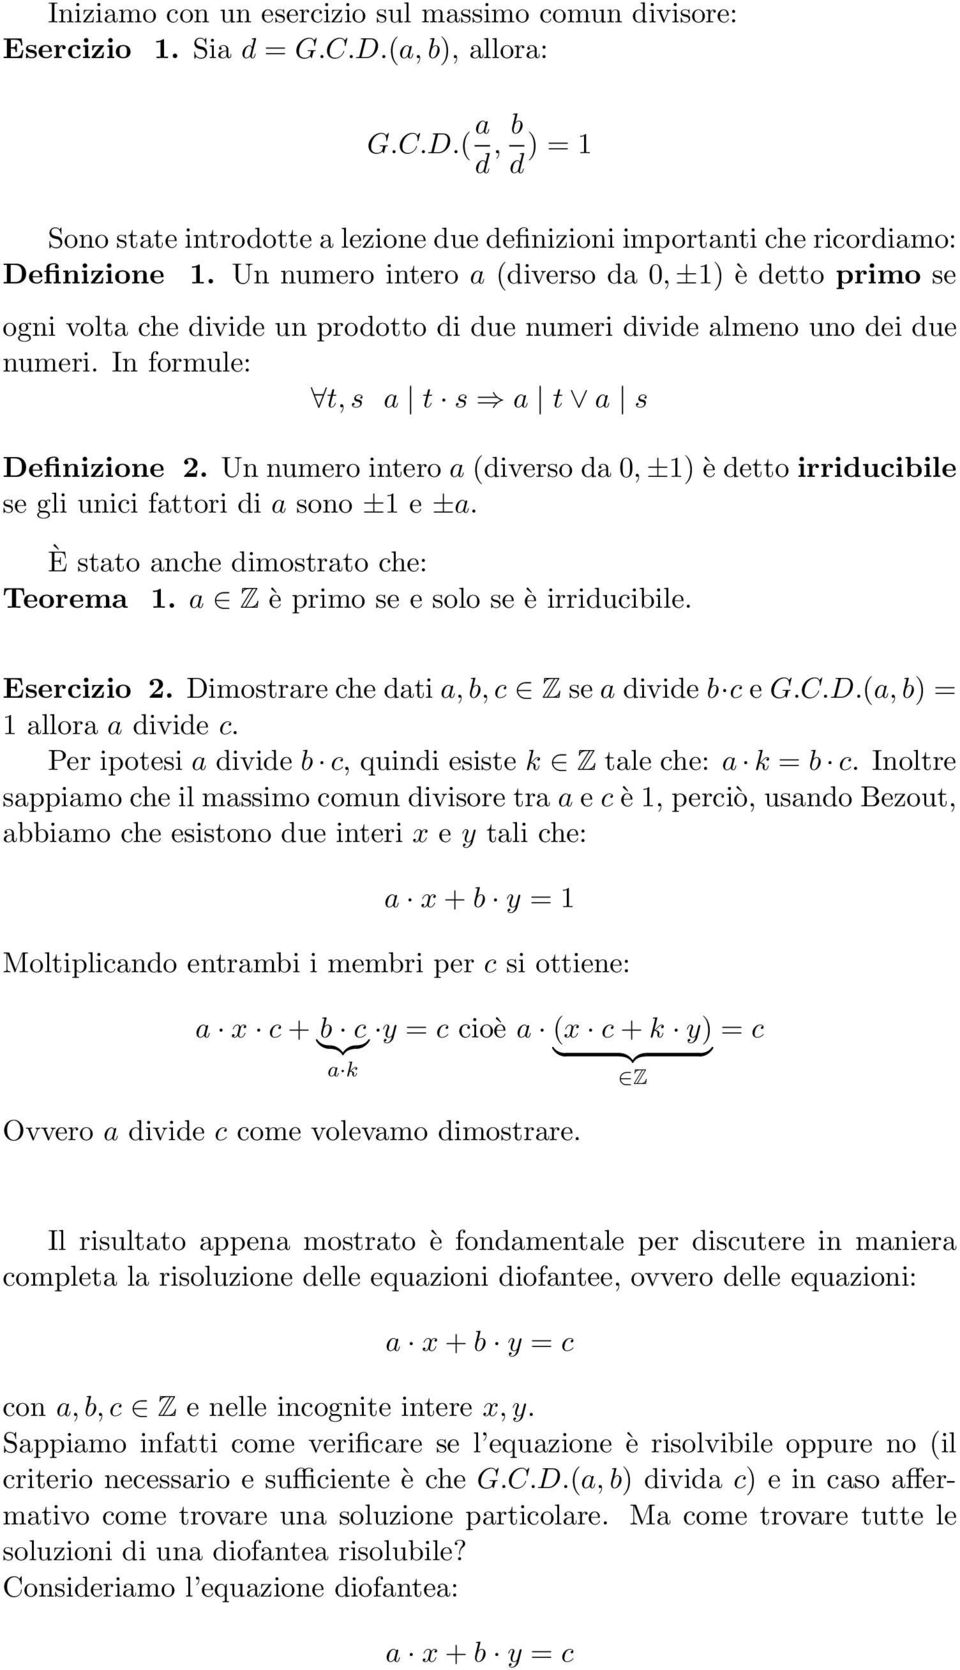 Un numero intero a (diverso da 0, ±1) è detto irriducibile se gli unici fattori di a sono ±1 e ±a. È stato anche dimostrato che: Teorema 1. a Z è primo se e solo se è irriducibile. Esercizio 2.